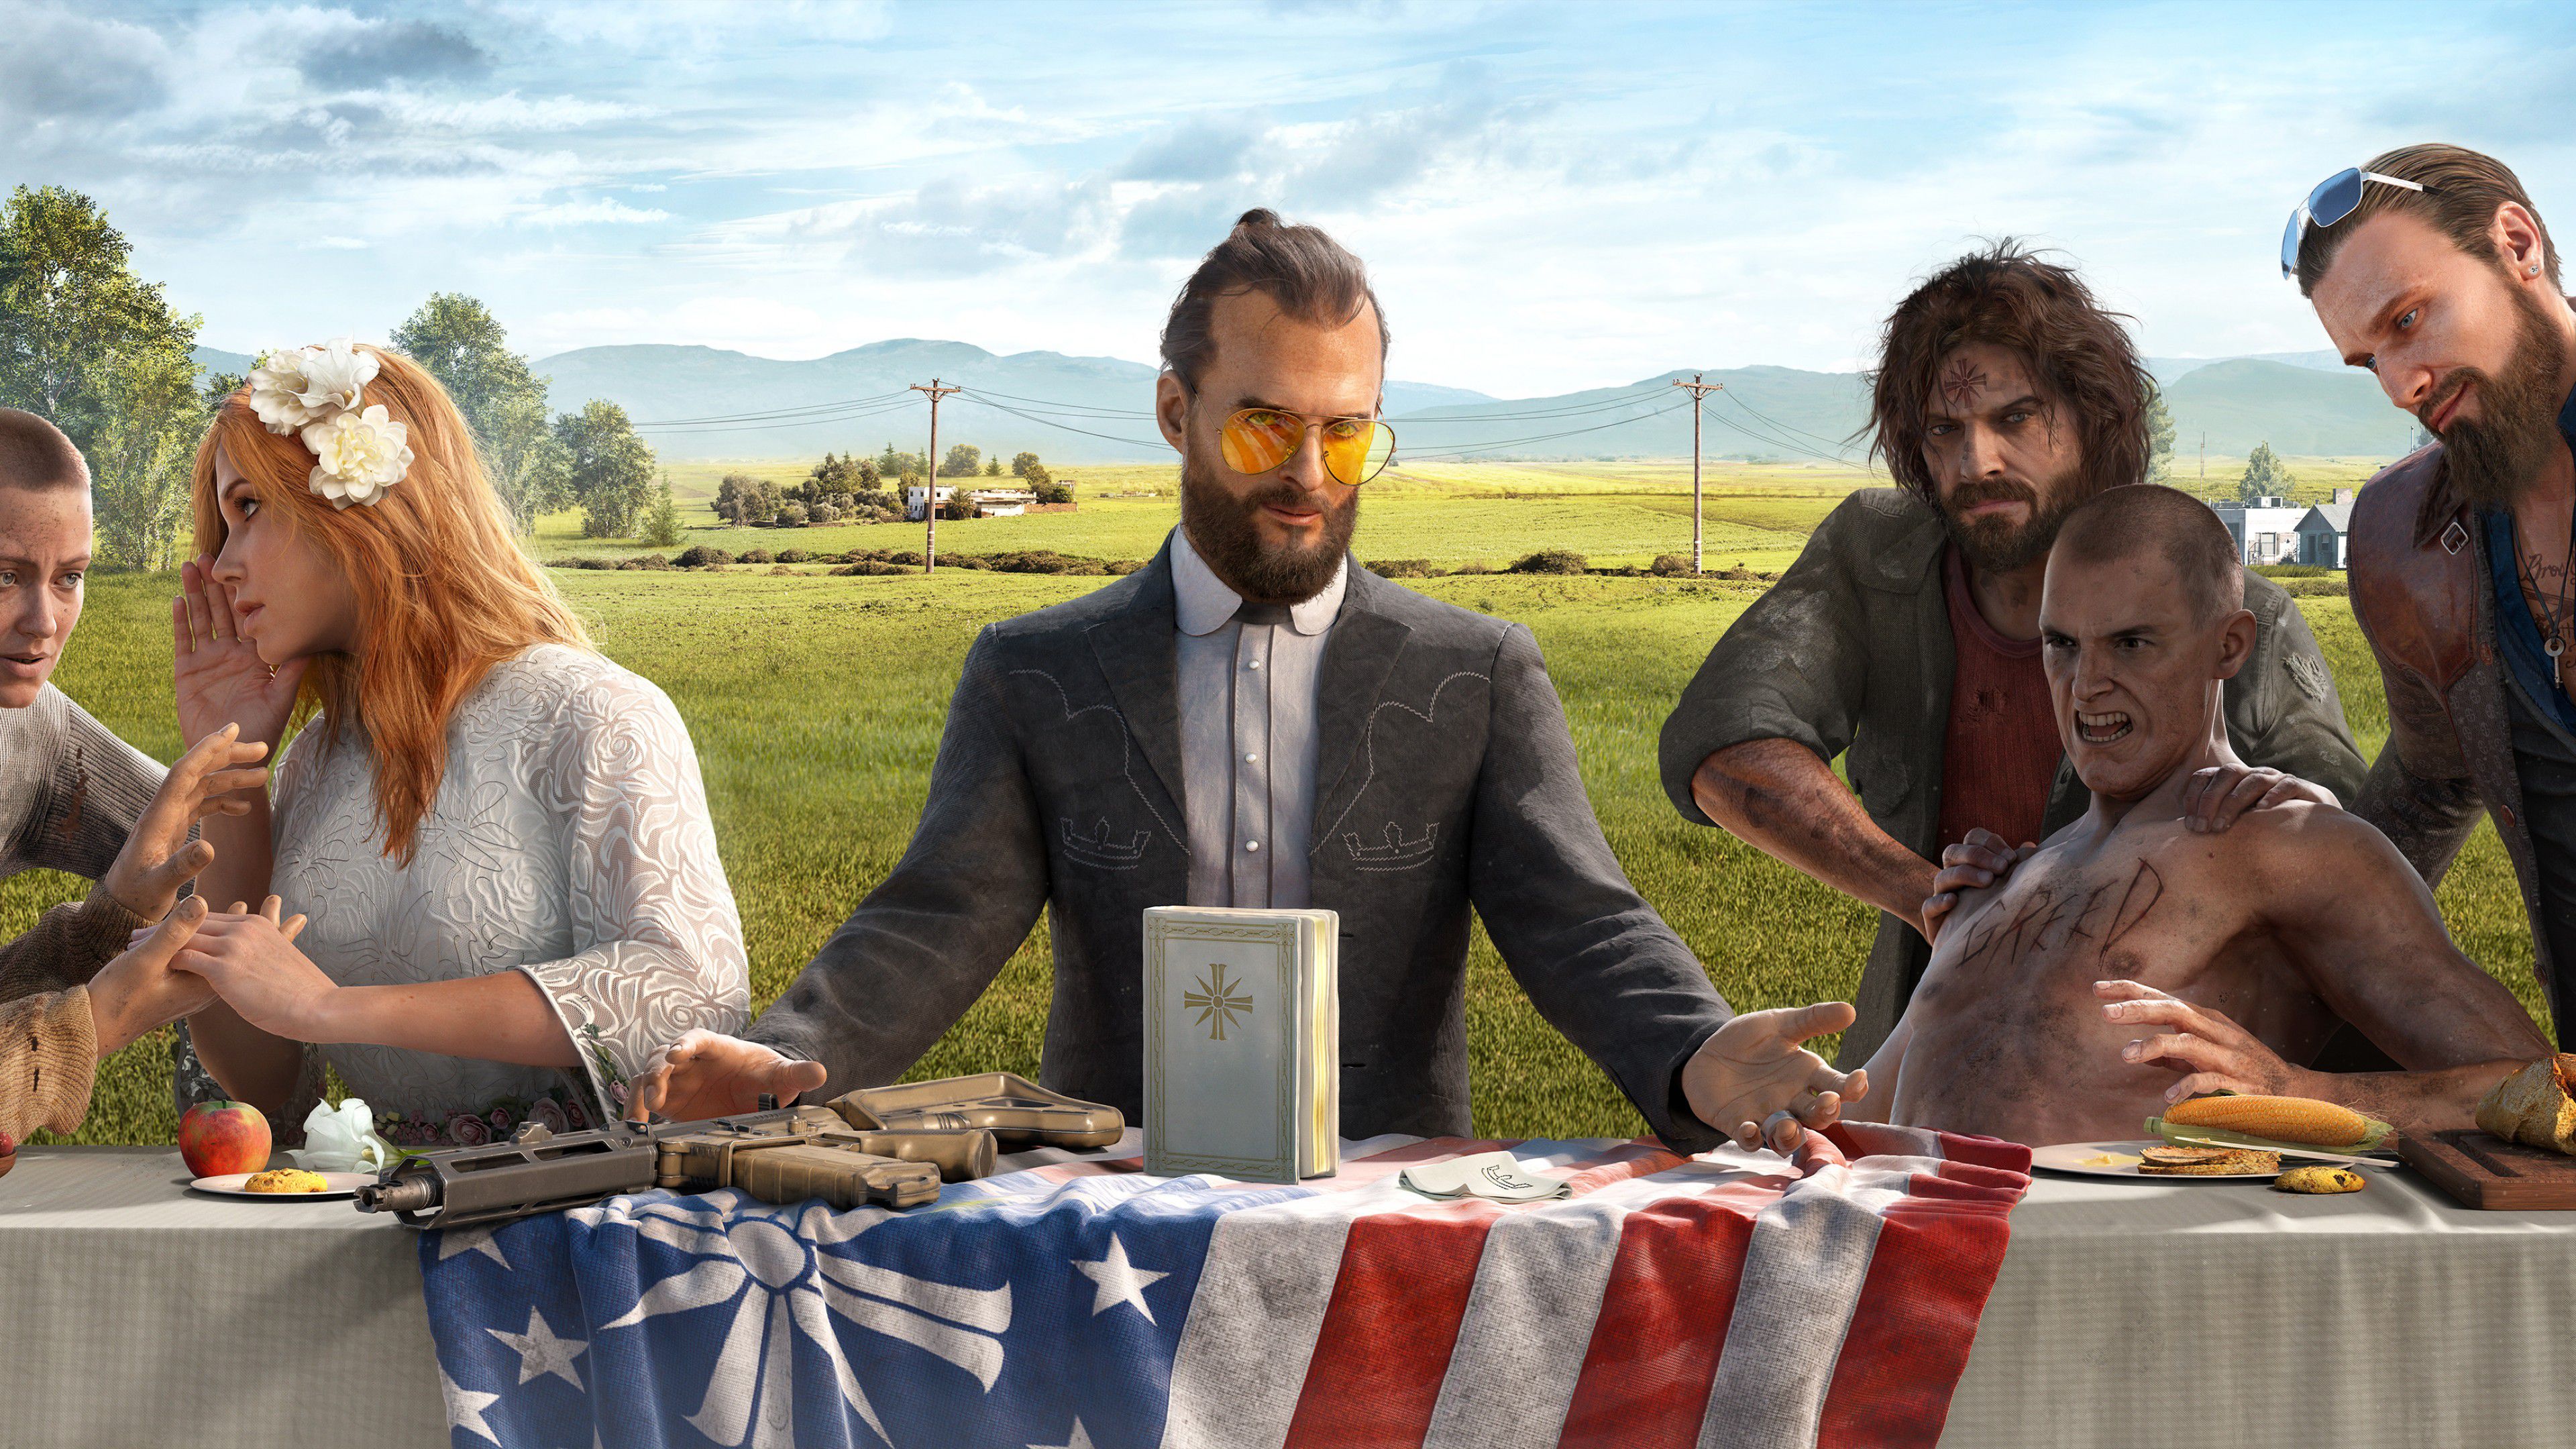 Far Cry 5' é liberado de graça por tempo limitado - Olhar Digital